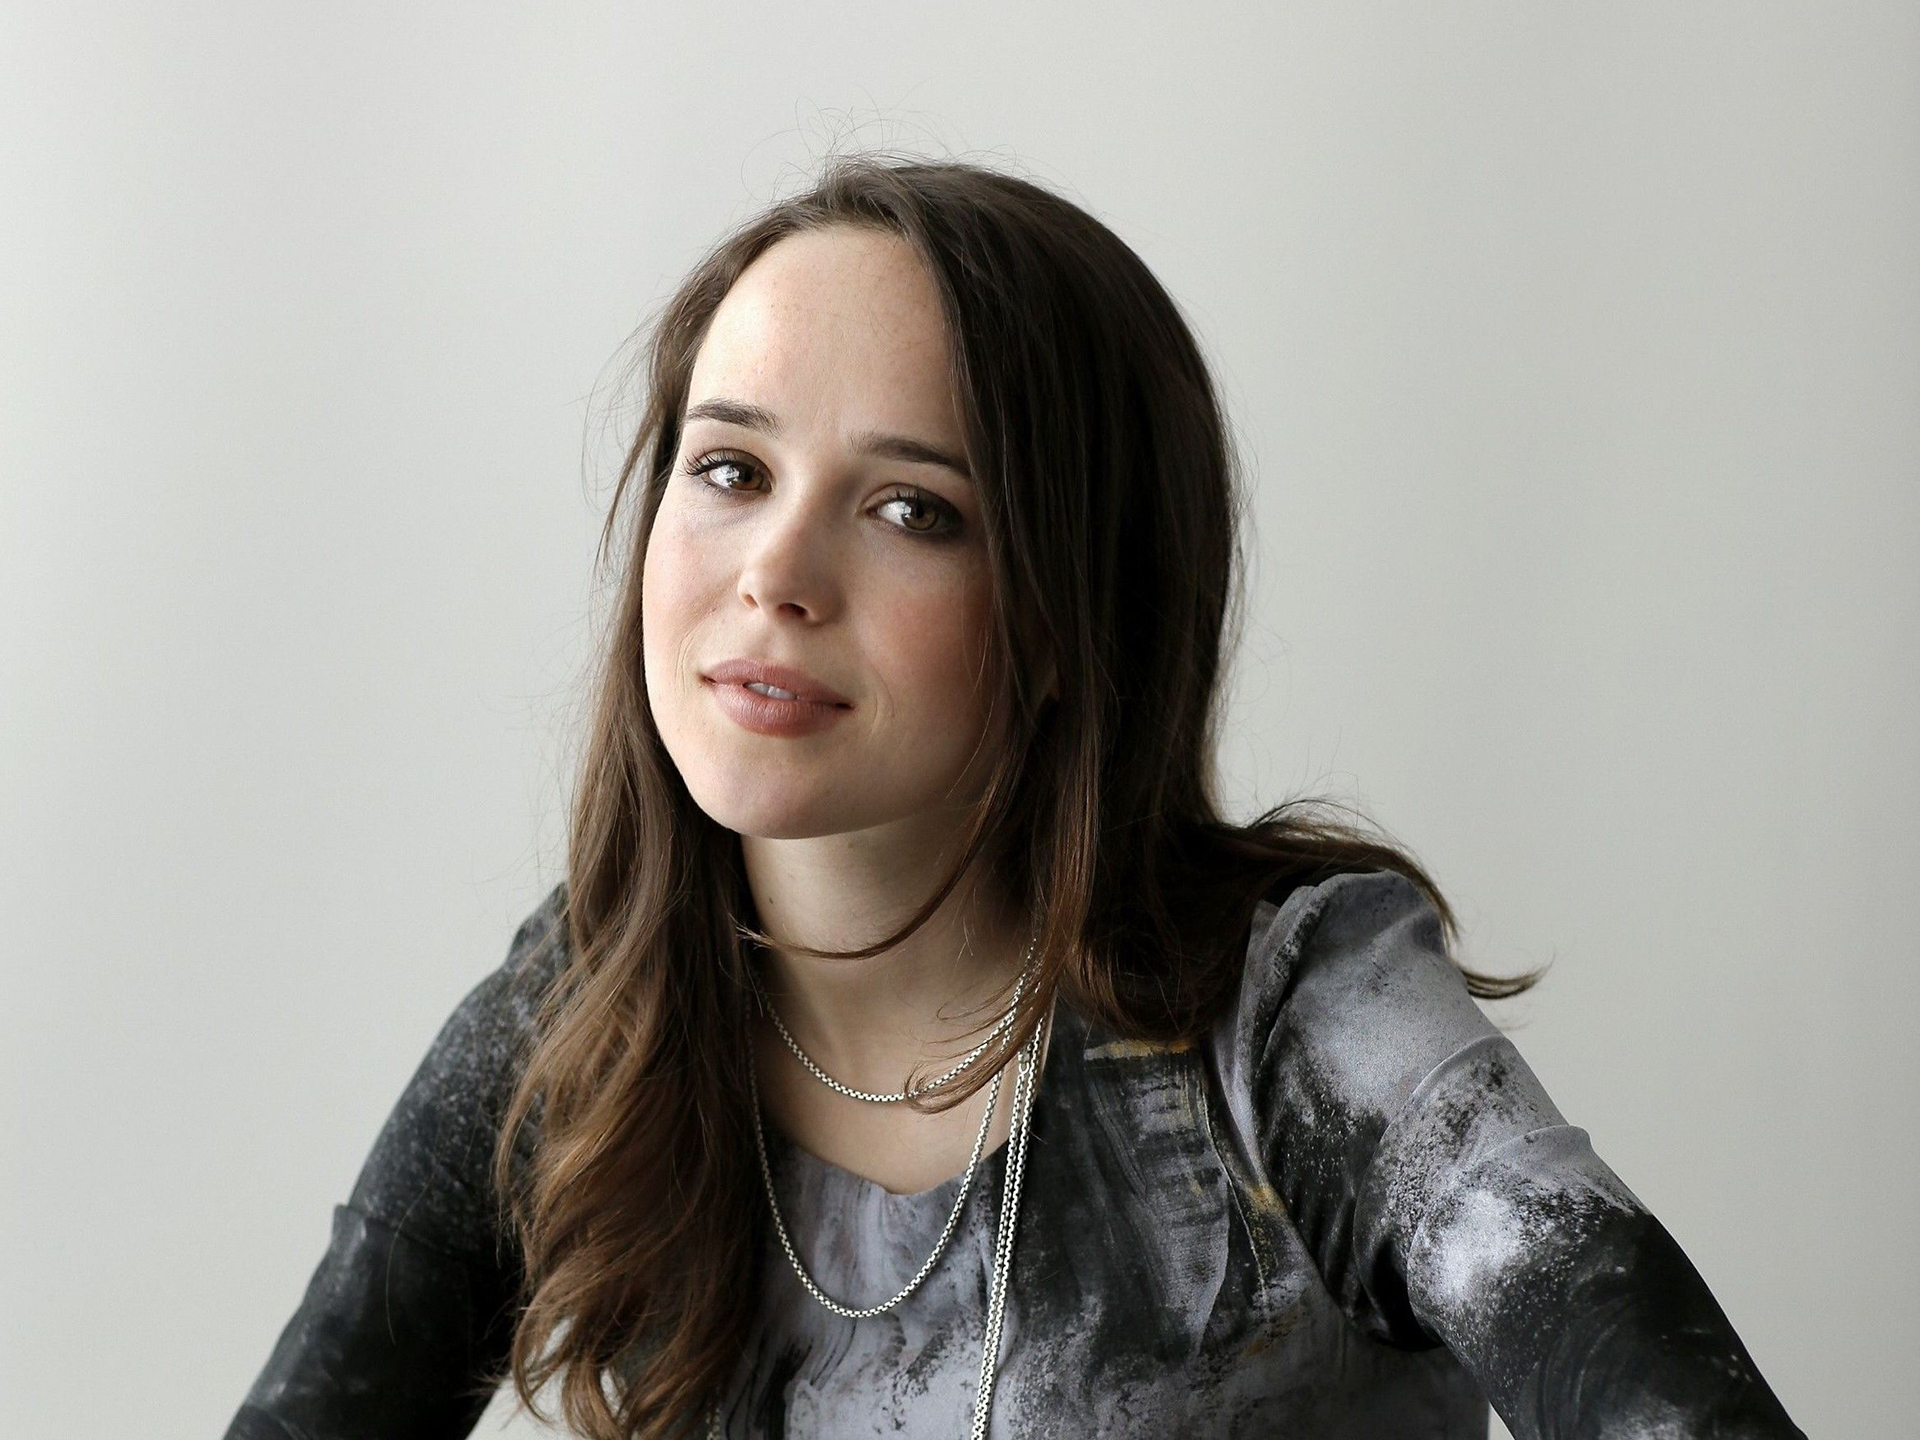 Ellen Page 2018 Wallpaper, HD Celebrities 4K Wallpapers, Images, Photos ...